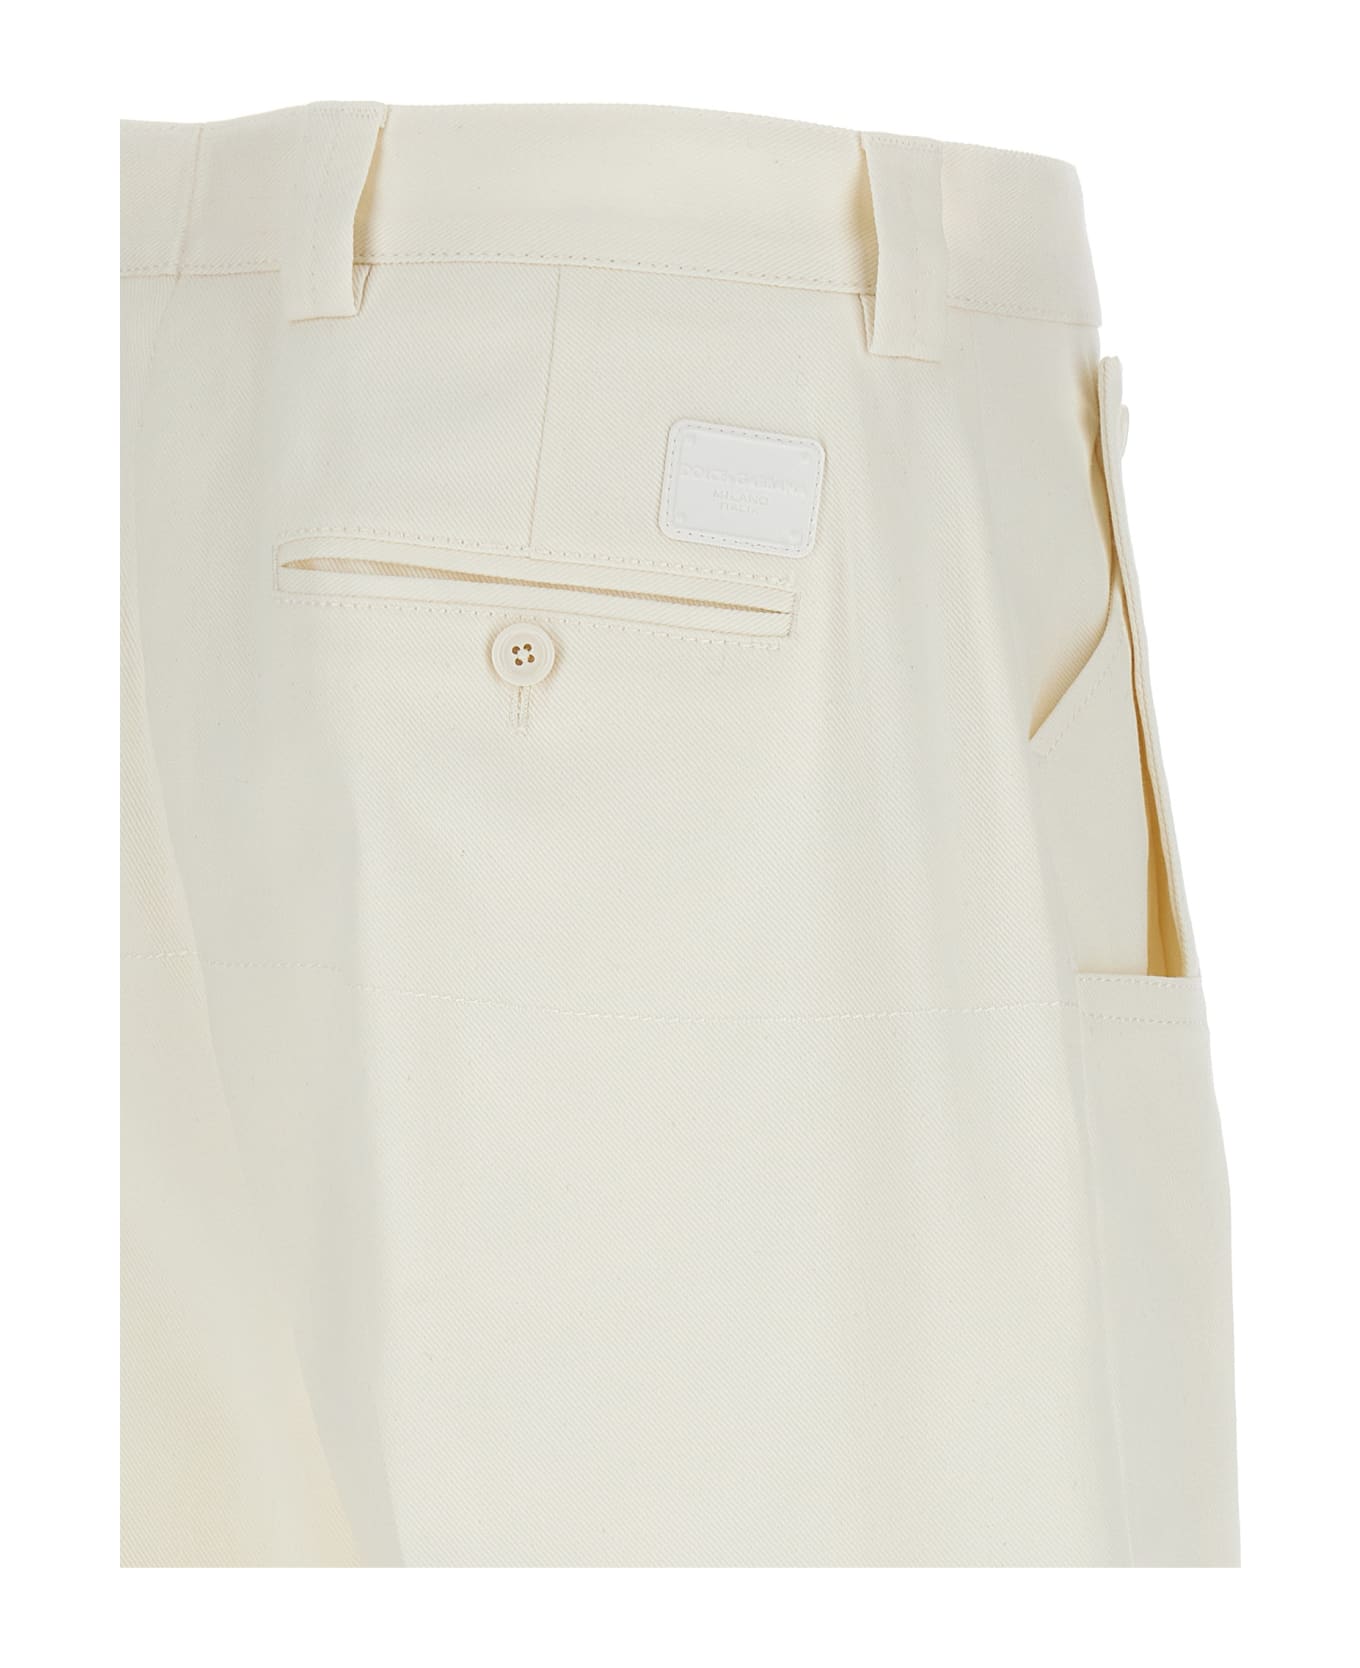 Dolce & Gabbana Loose Leg Pants - White